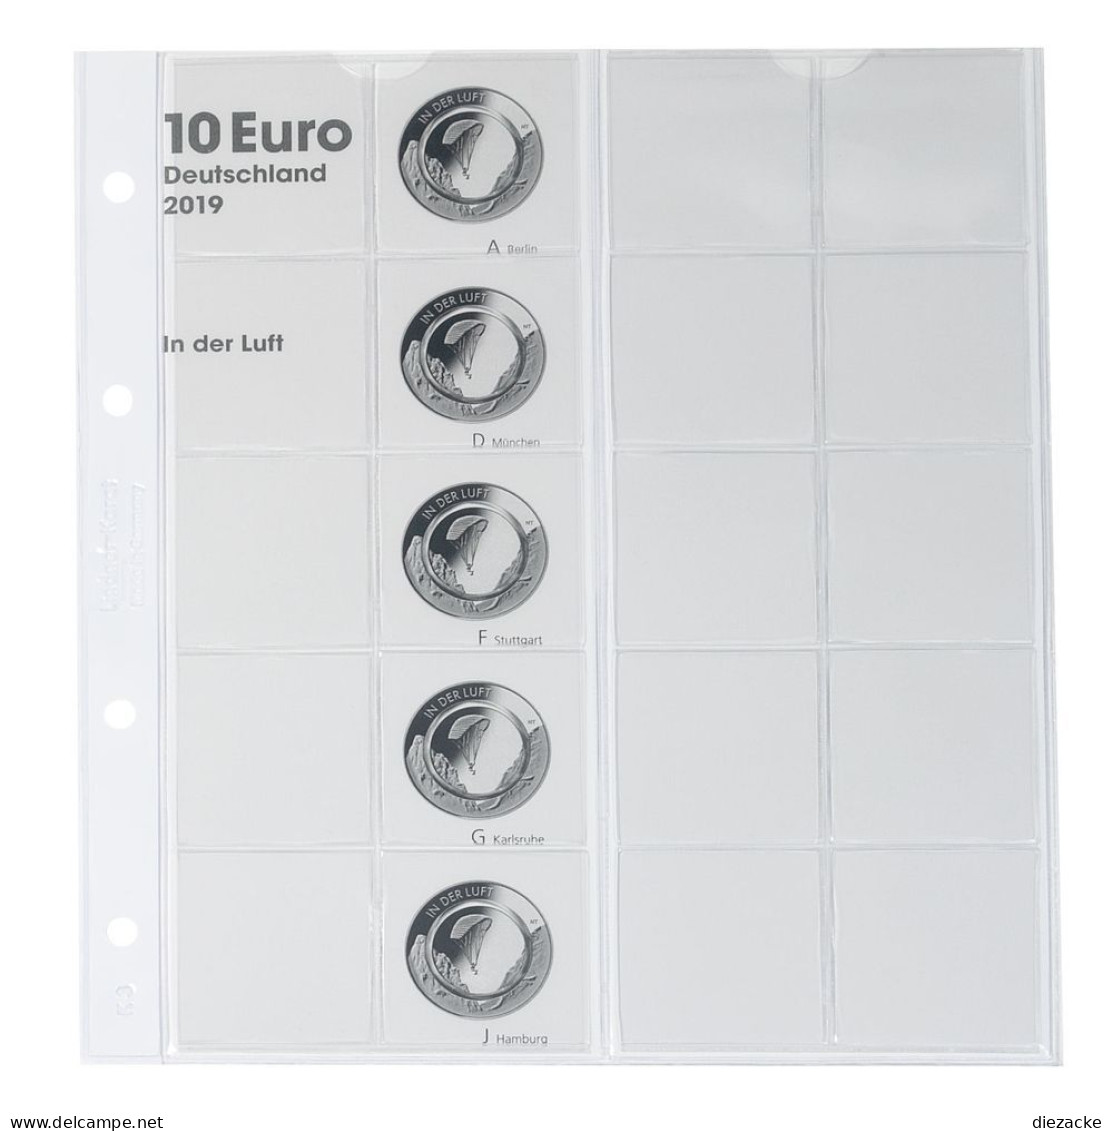 Lindner Vordruckblatt Karat Für 10 Euro-Münzen Polymerring 1110-1 Neu - Materiale